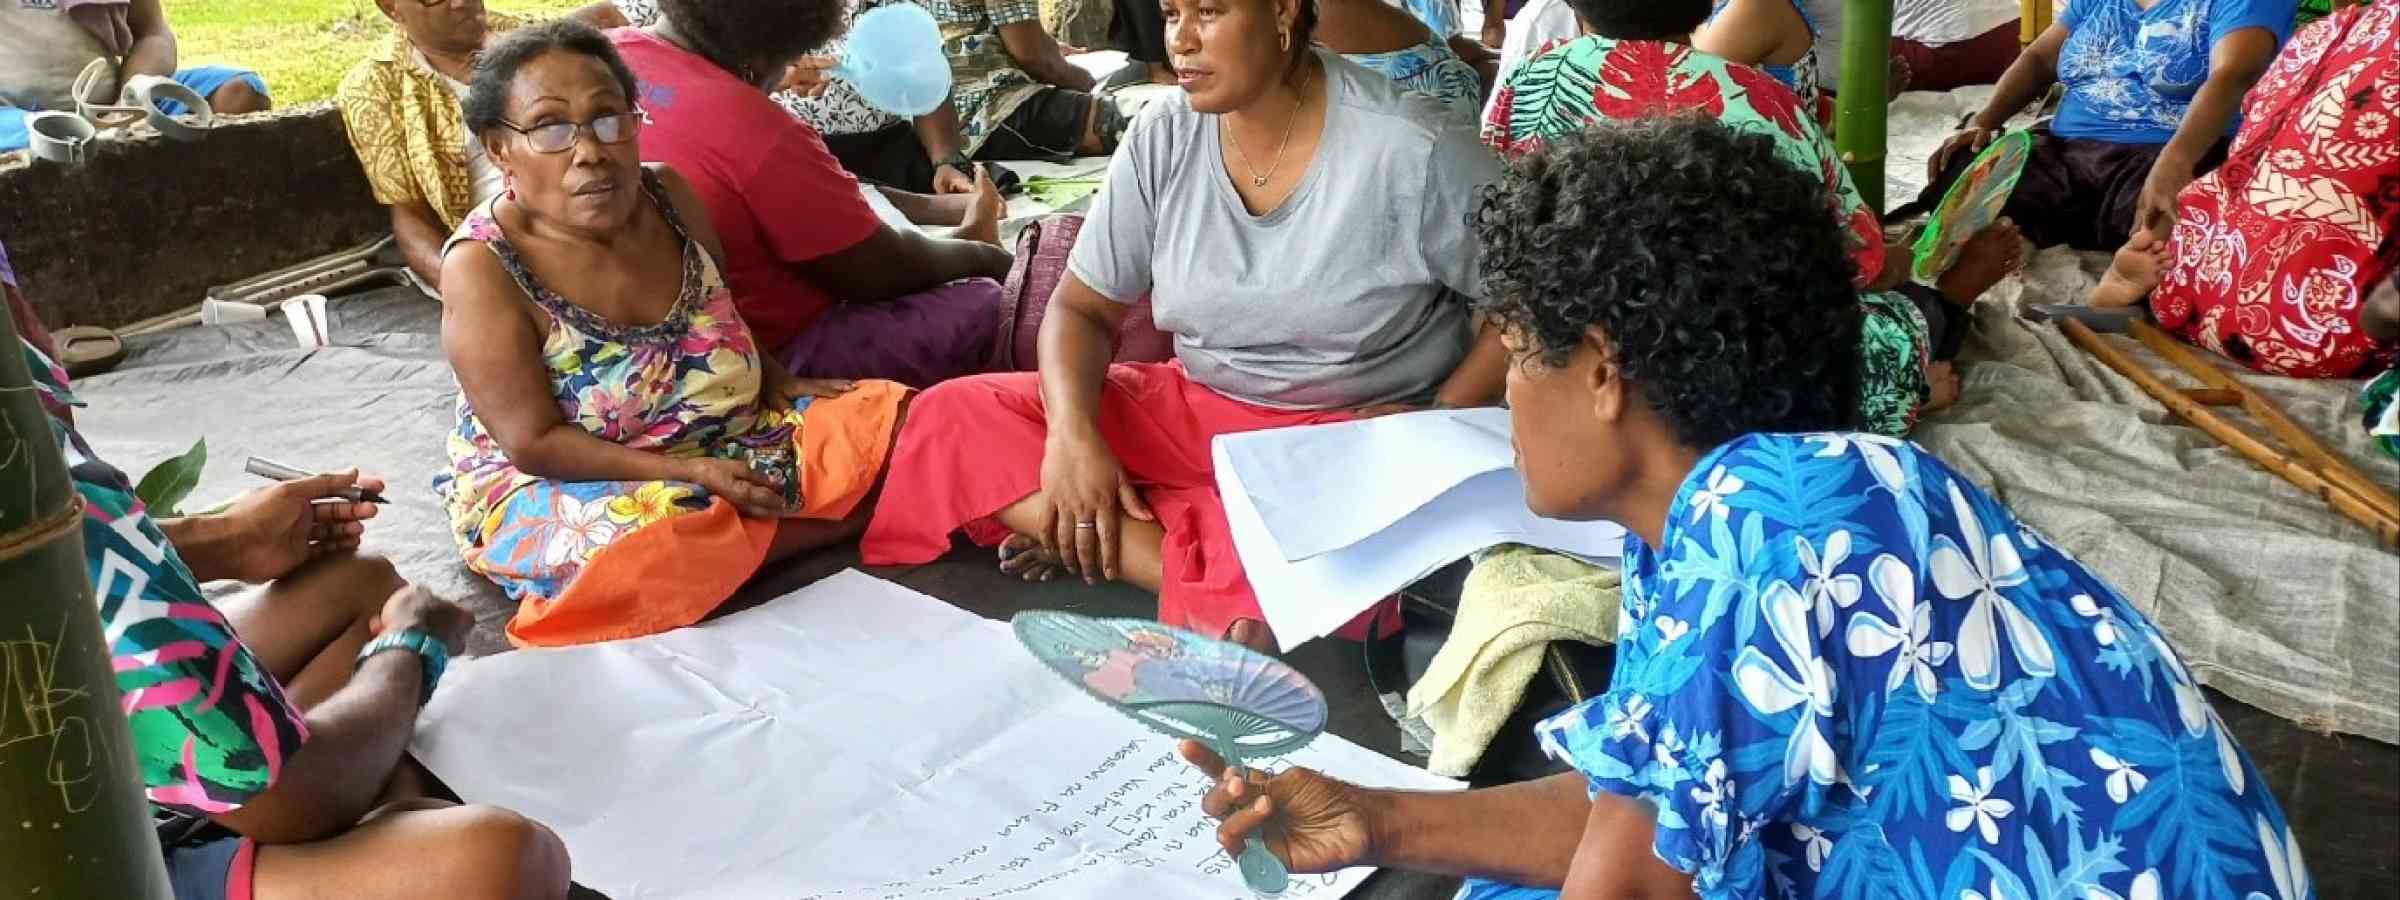 A group of women in Fiji